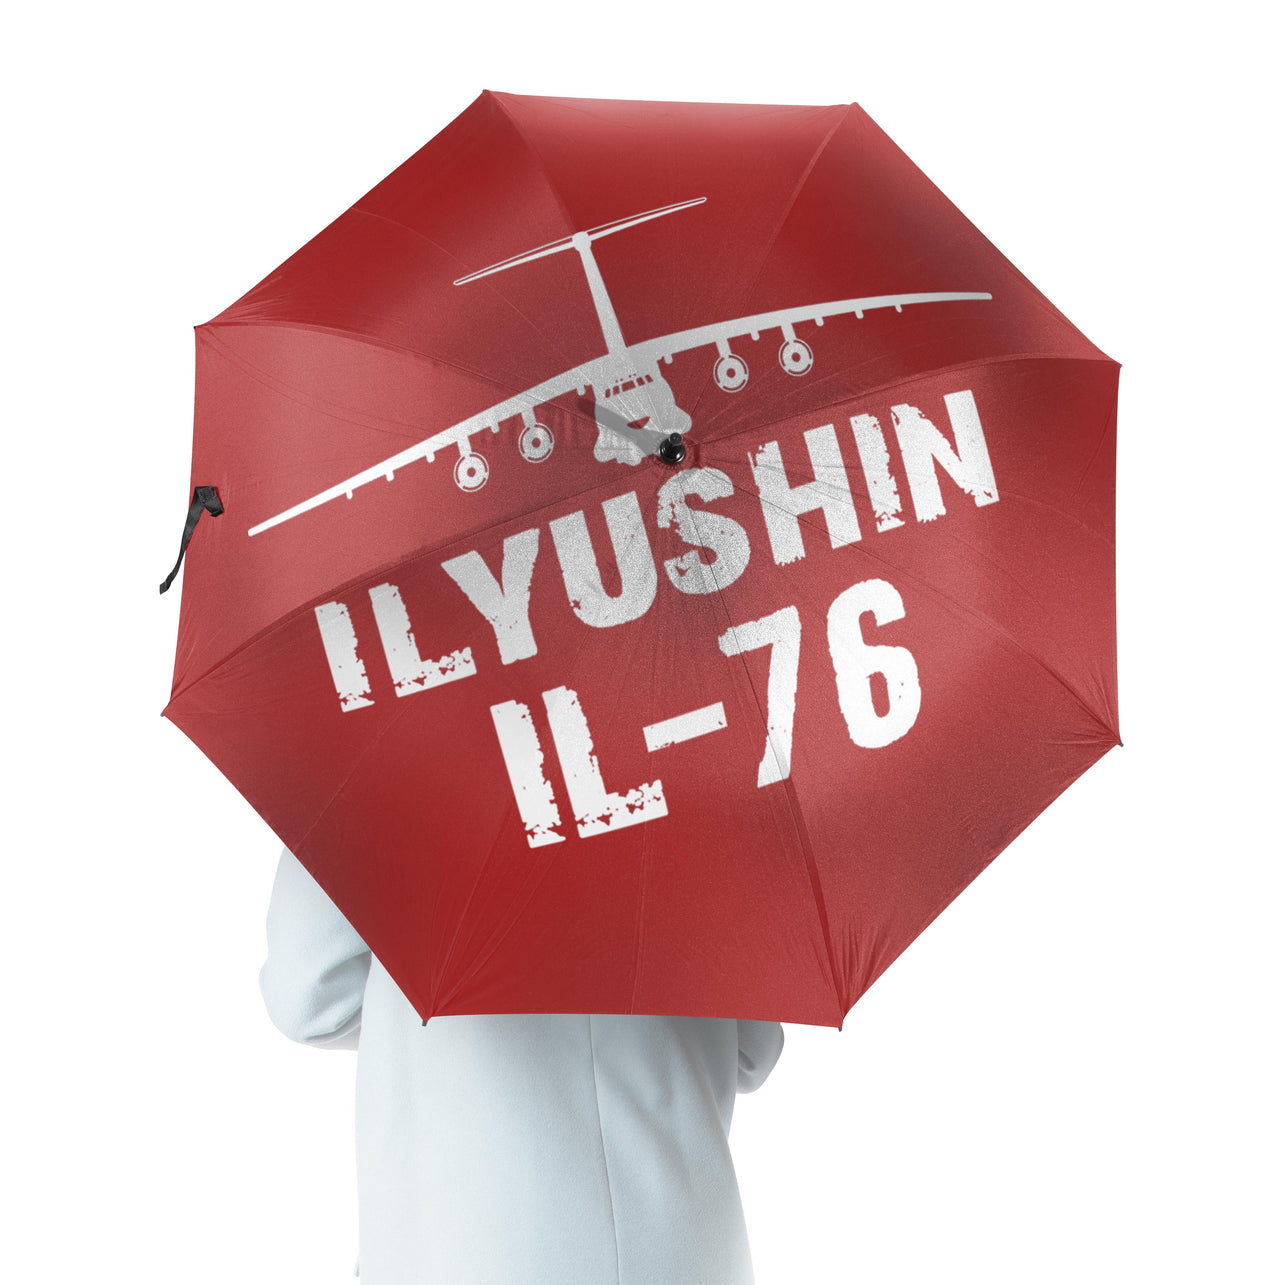 ILyushin IL-76 & Plane Designed Umbrella